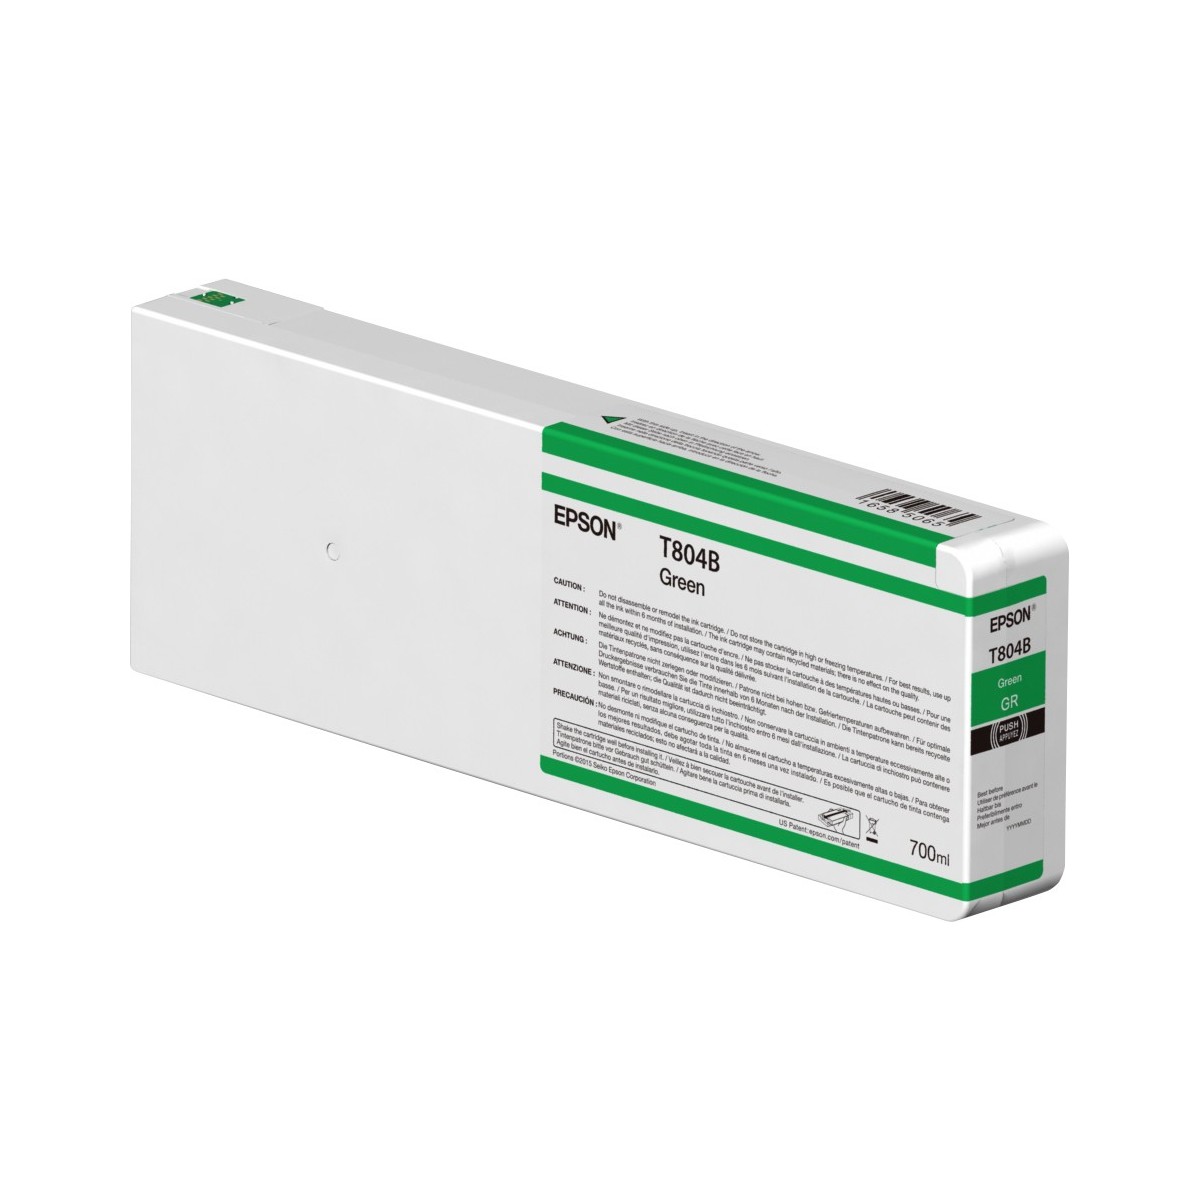 Epson Singlepack Green T804B00 UltraChrome HDX 700ml - Pigment-based ink - 700 ml - 1 pc(s)